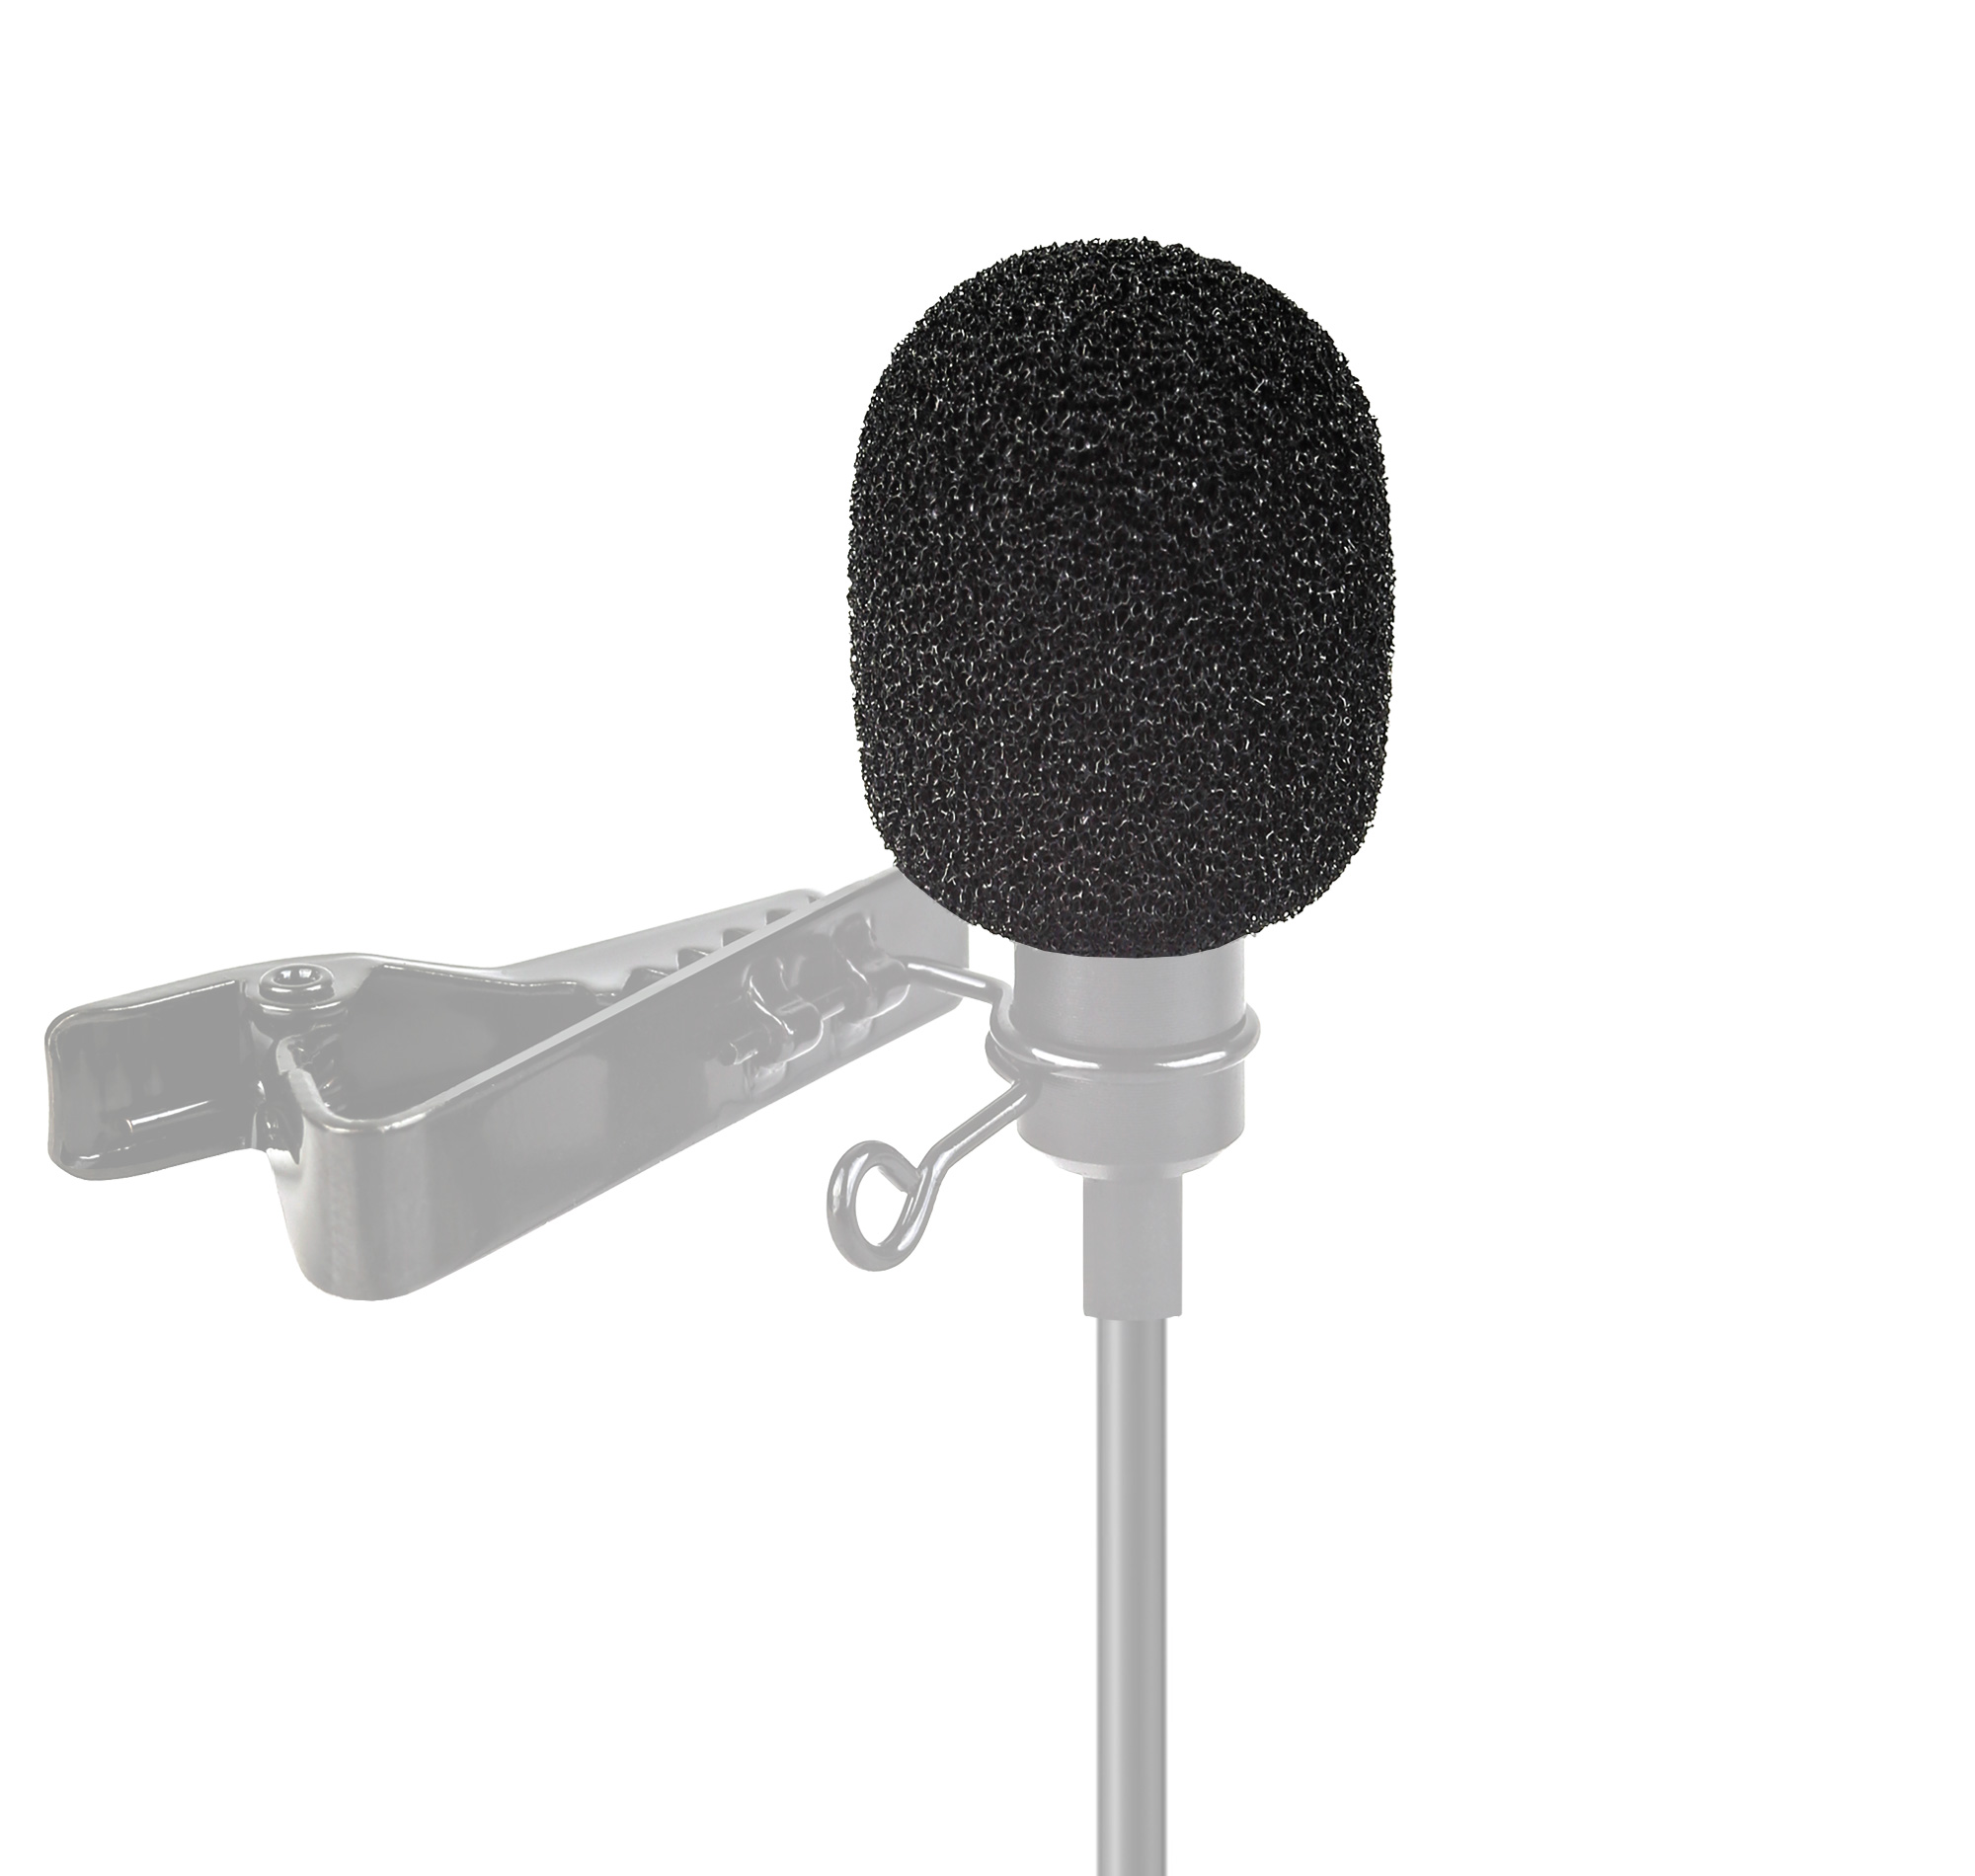 Mikrofon Schaumstoff - Schutz für z.B. Lavalier-Mikrofone - 10er Pack - Windschutz, Abdeckung, gut geeignet für Outdoor-Aktivitäten